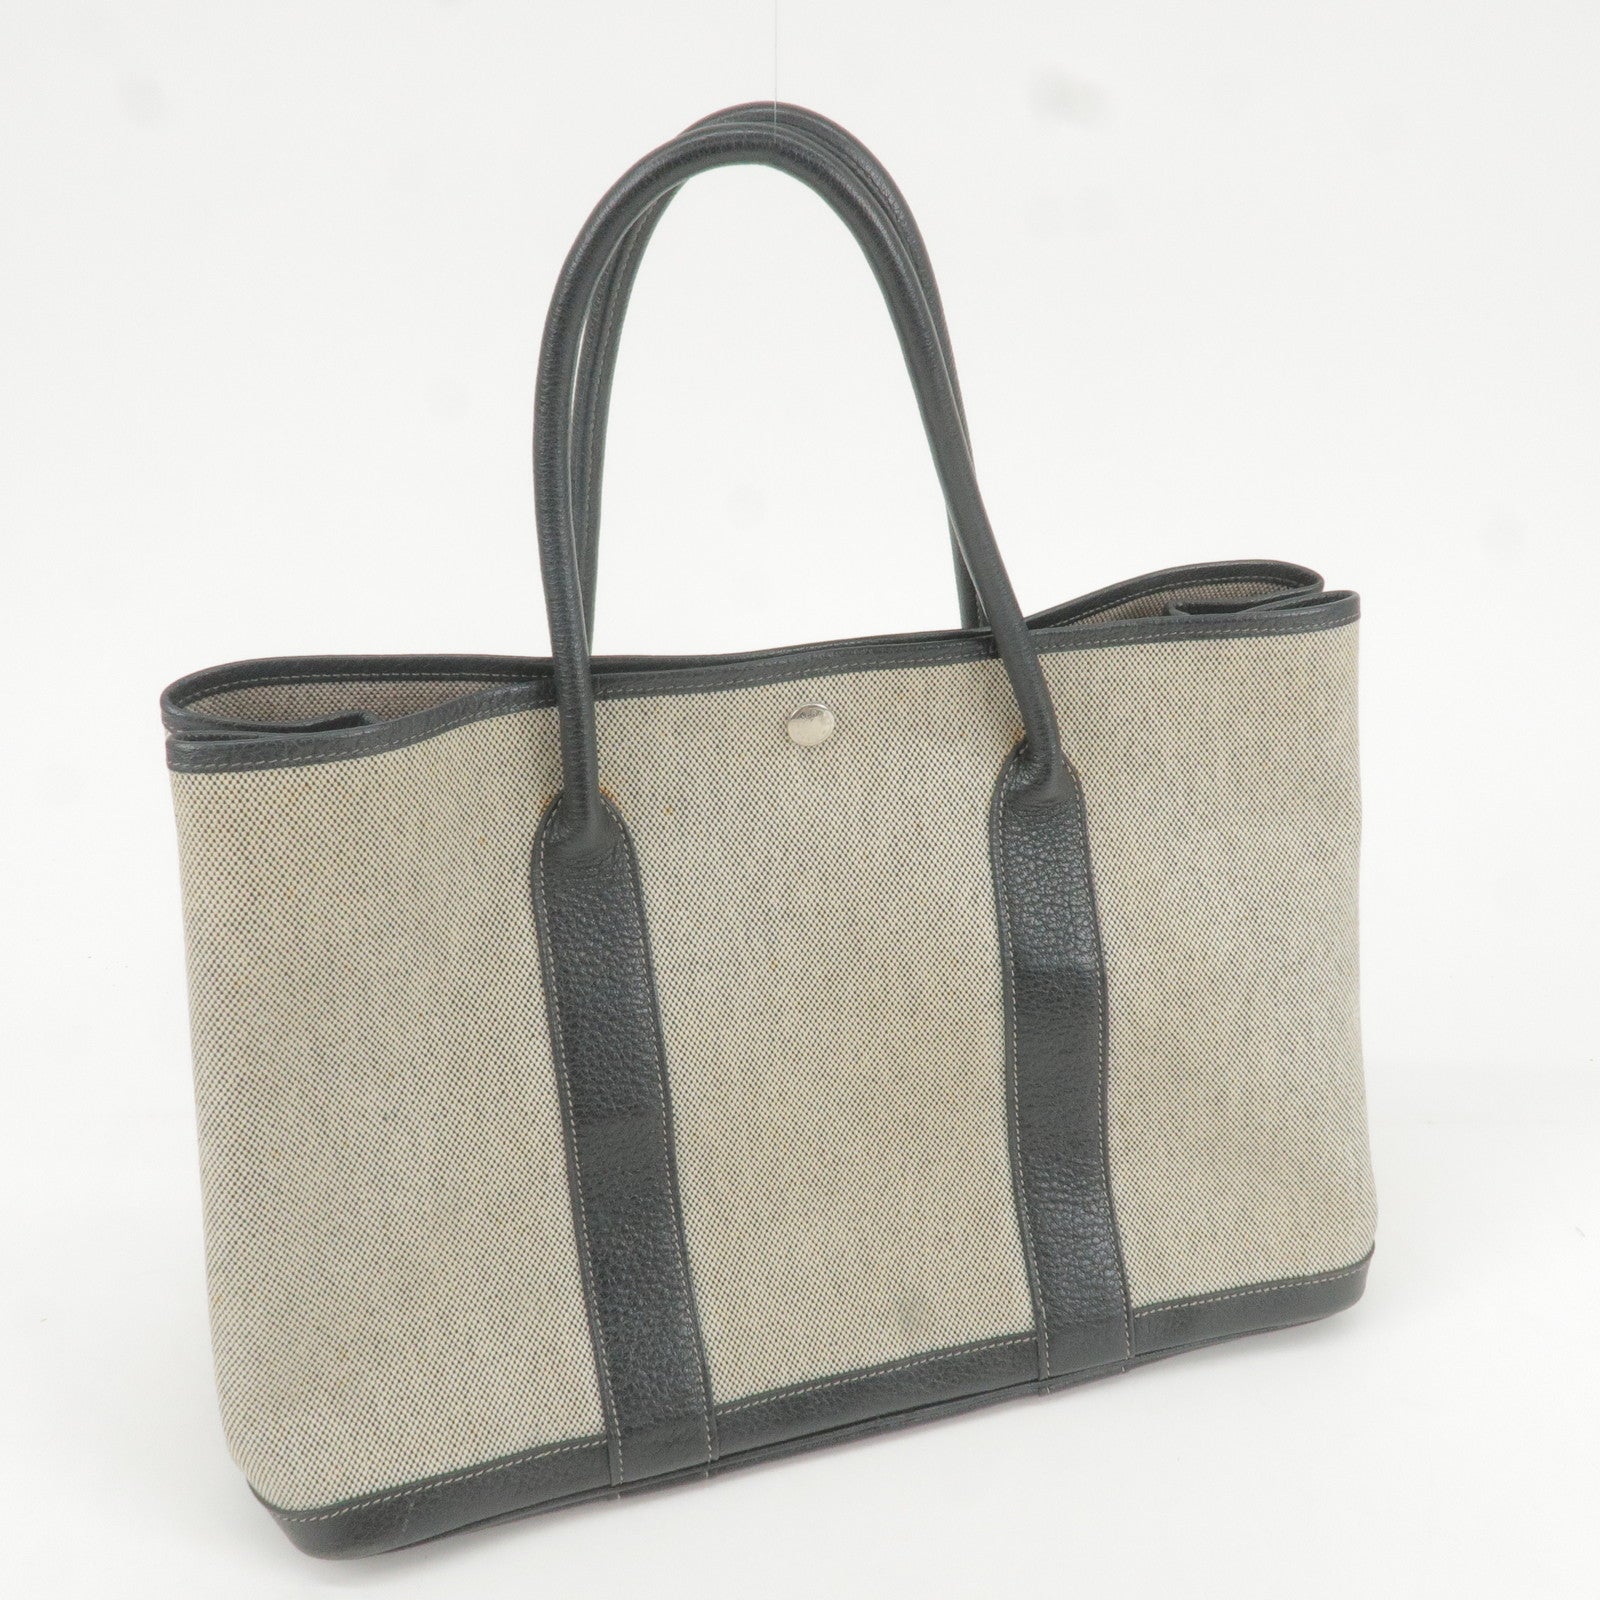 Hermès Jypsiere 31 in Pearl Grey  Street style bags, Hermes bags